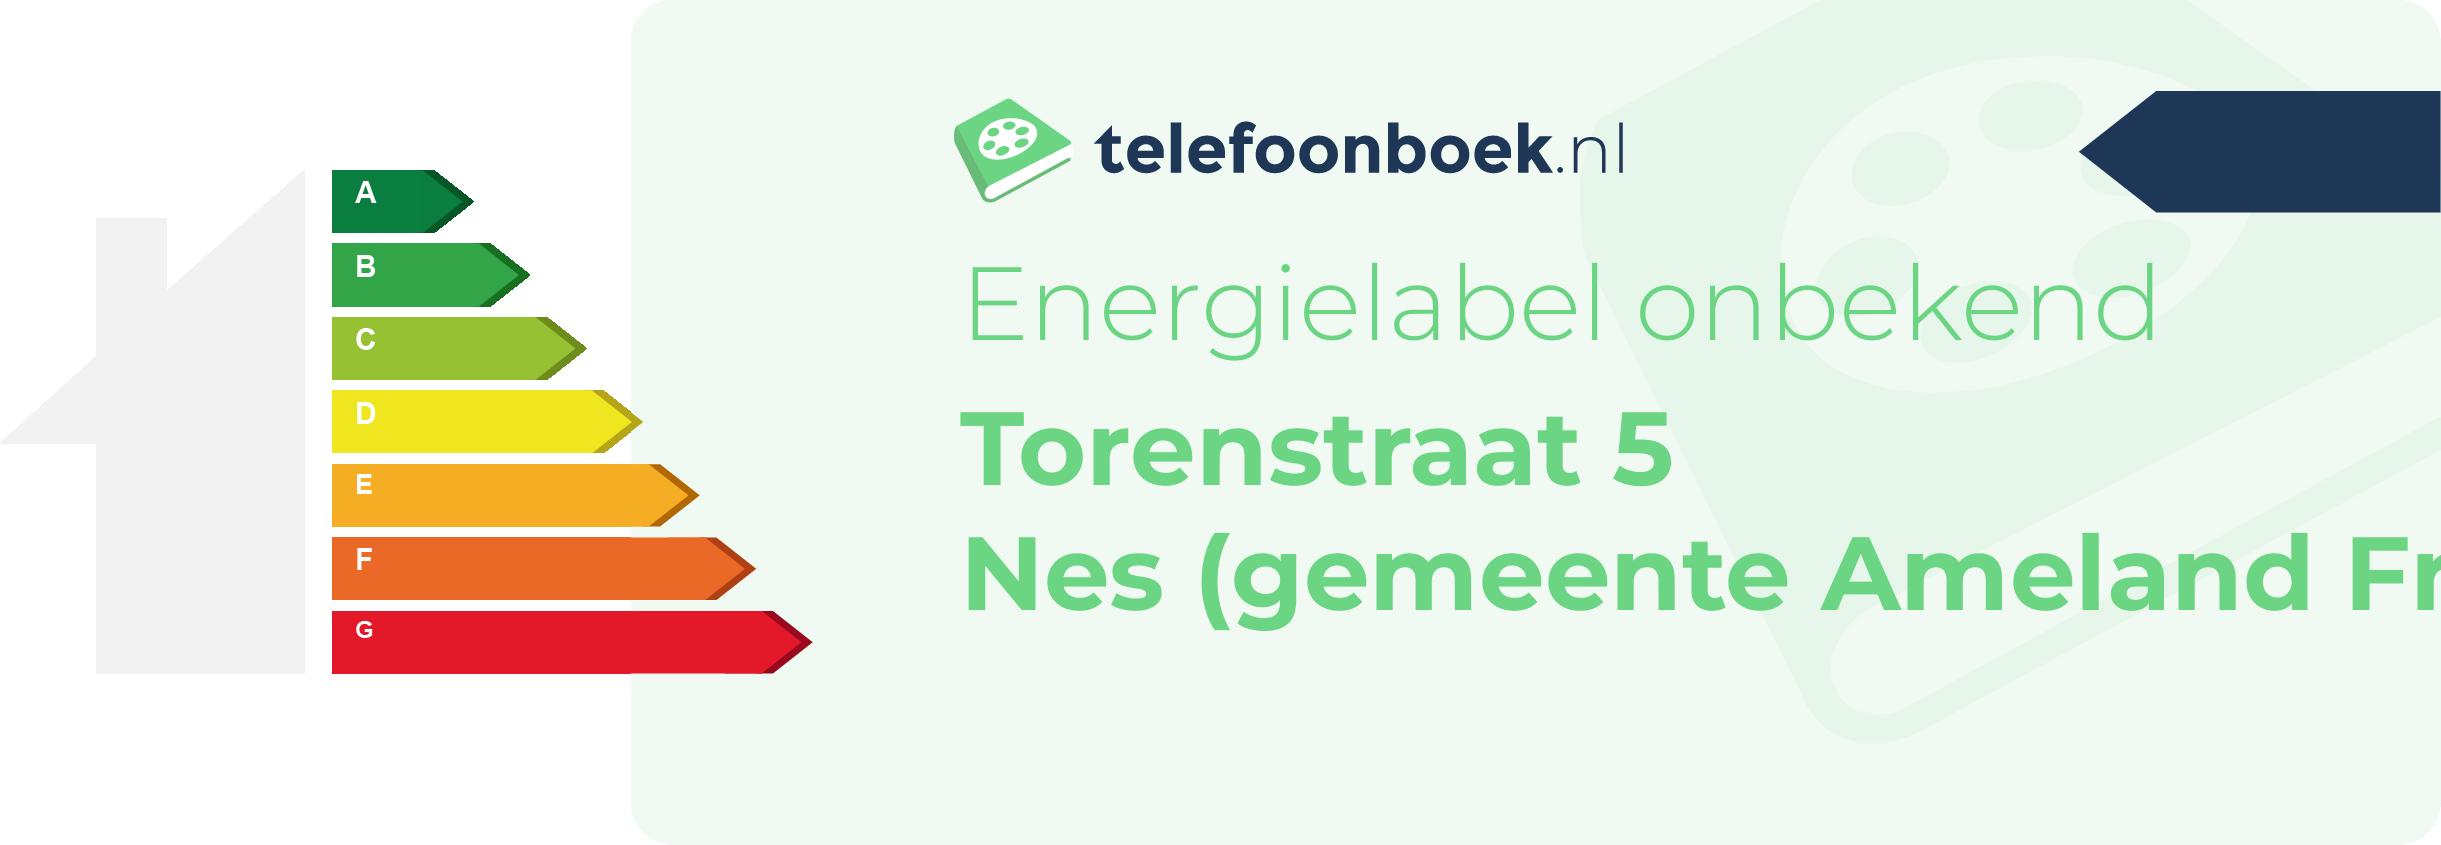 Energielabel Torenstraat 5 Nes (gemeente Ameland Friesland)